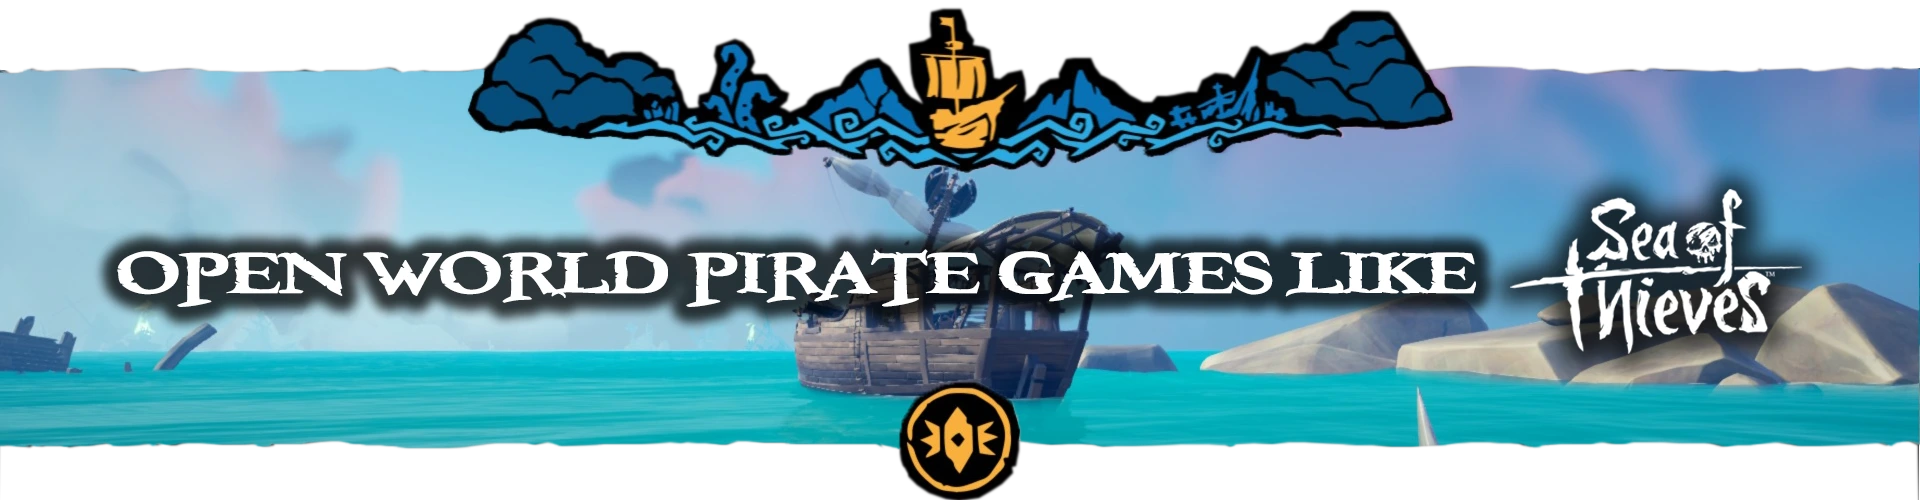 Jeux de Pirates en Open World comme Sea of Thieves